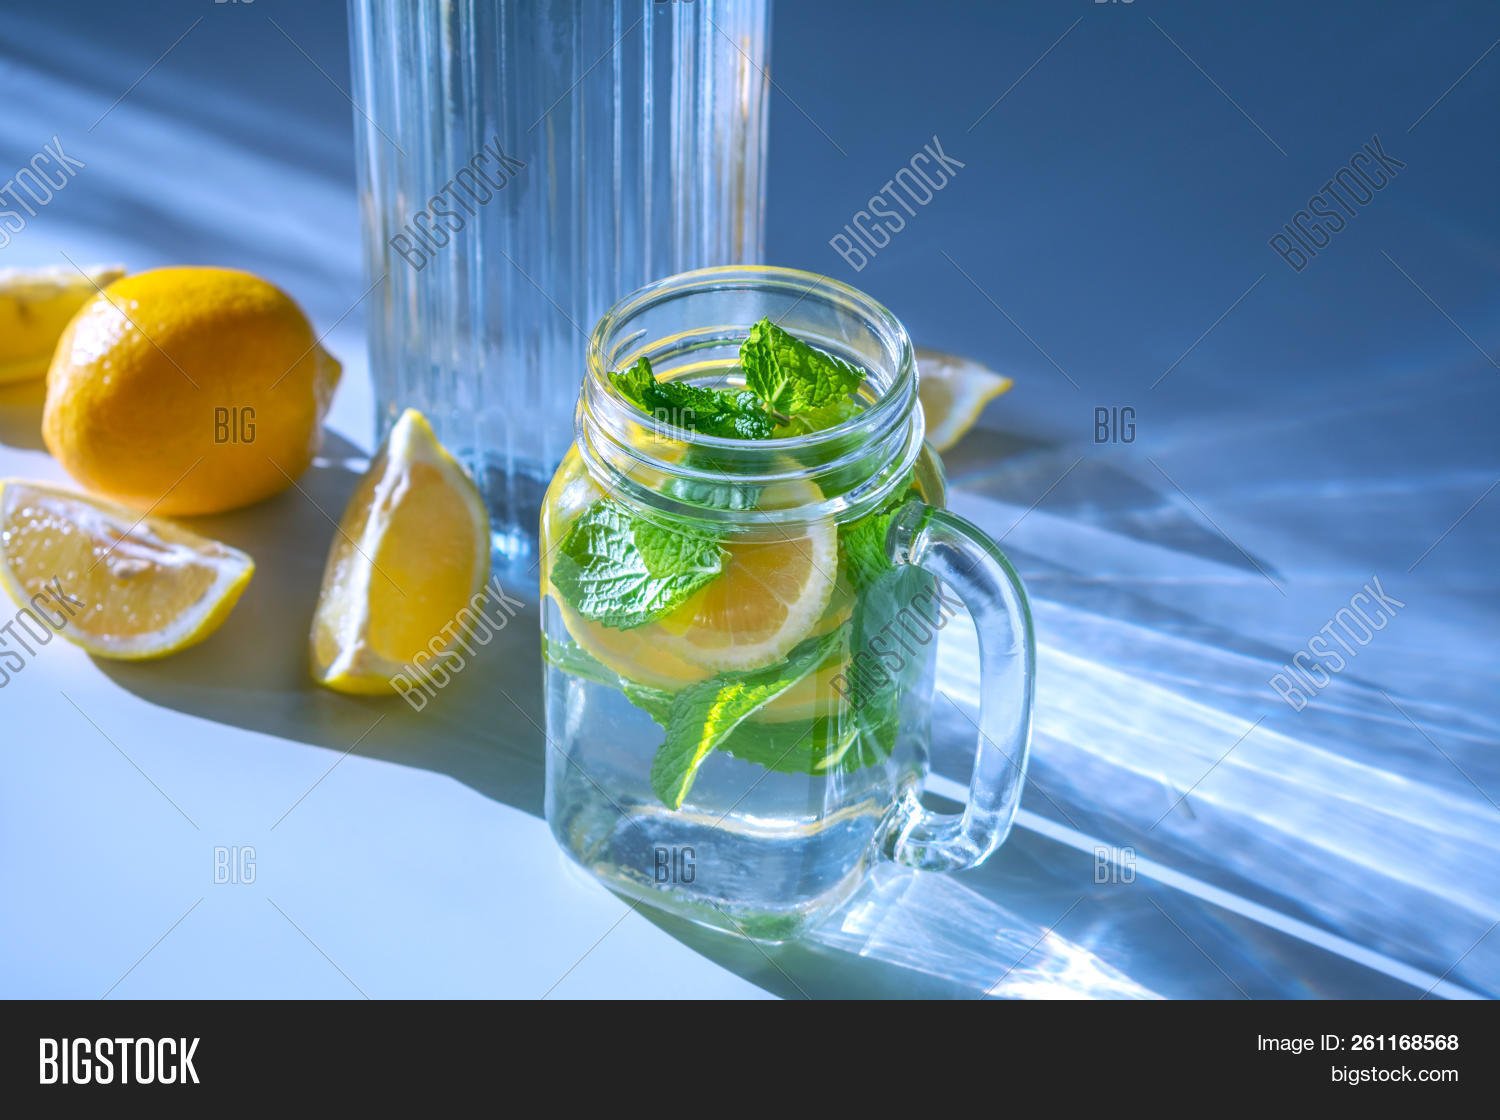 Питье вода с лимоном. Вода с лимоном и мятой. Стакан воды с лимоном. Лимон. Лимонная вода с мятой.